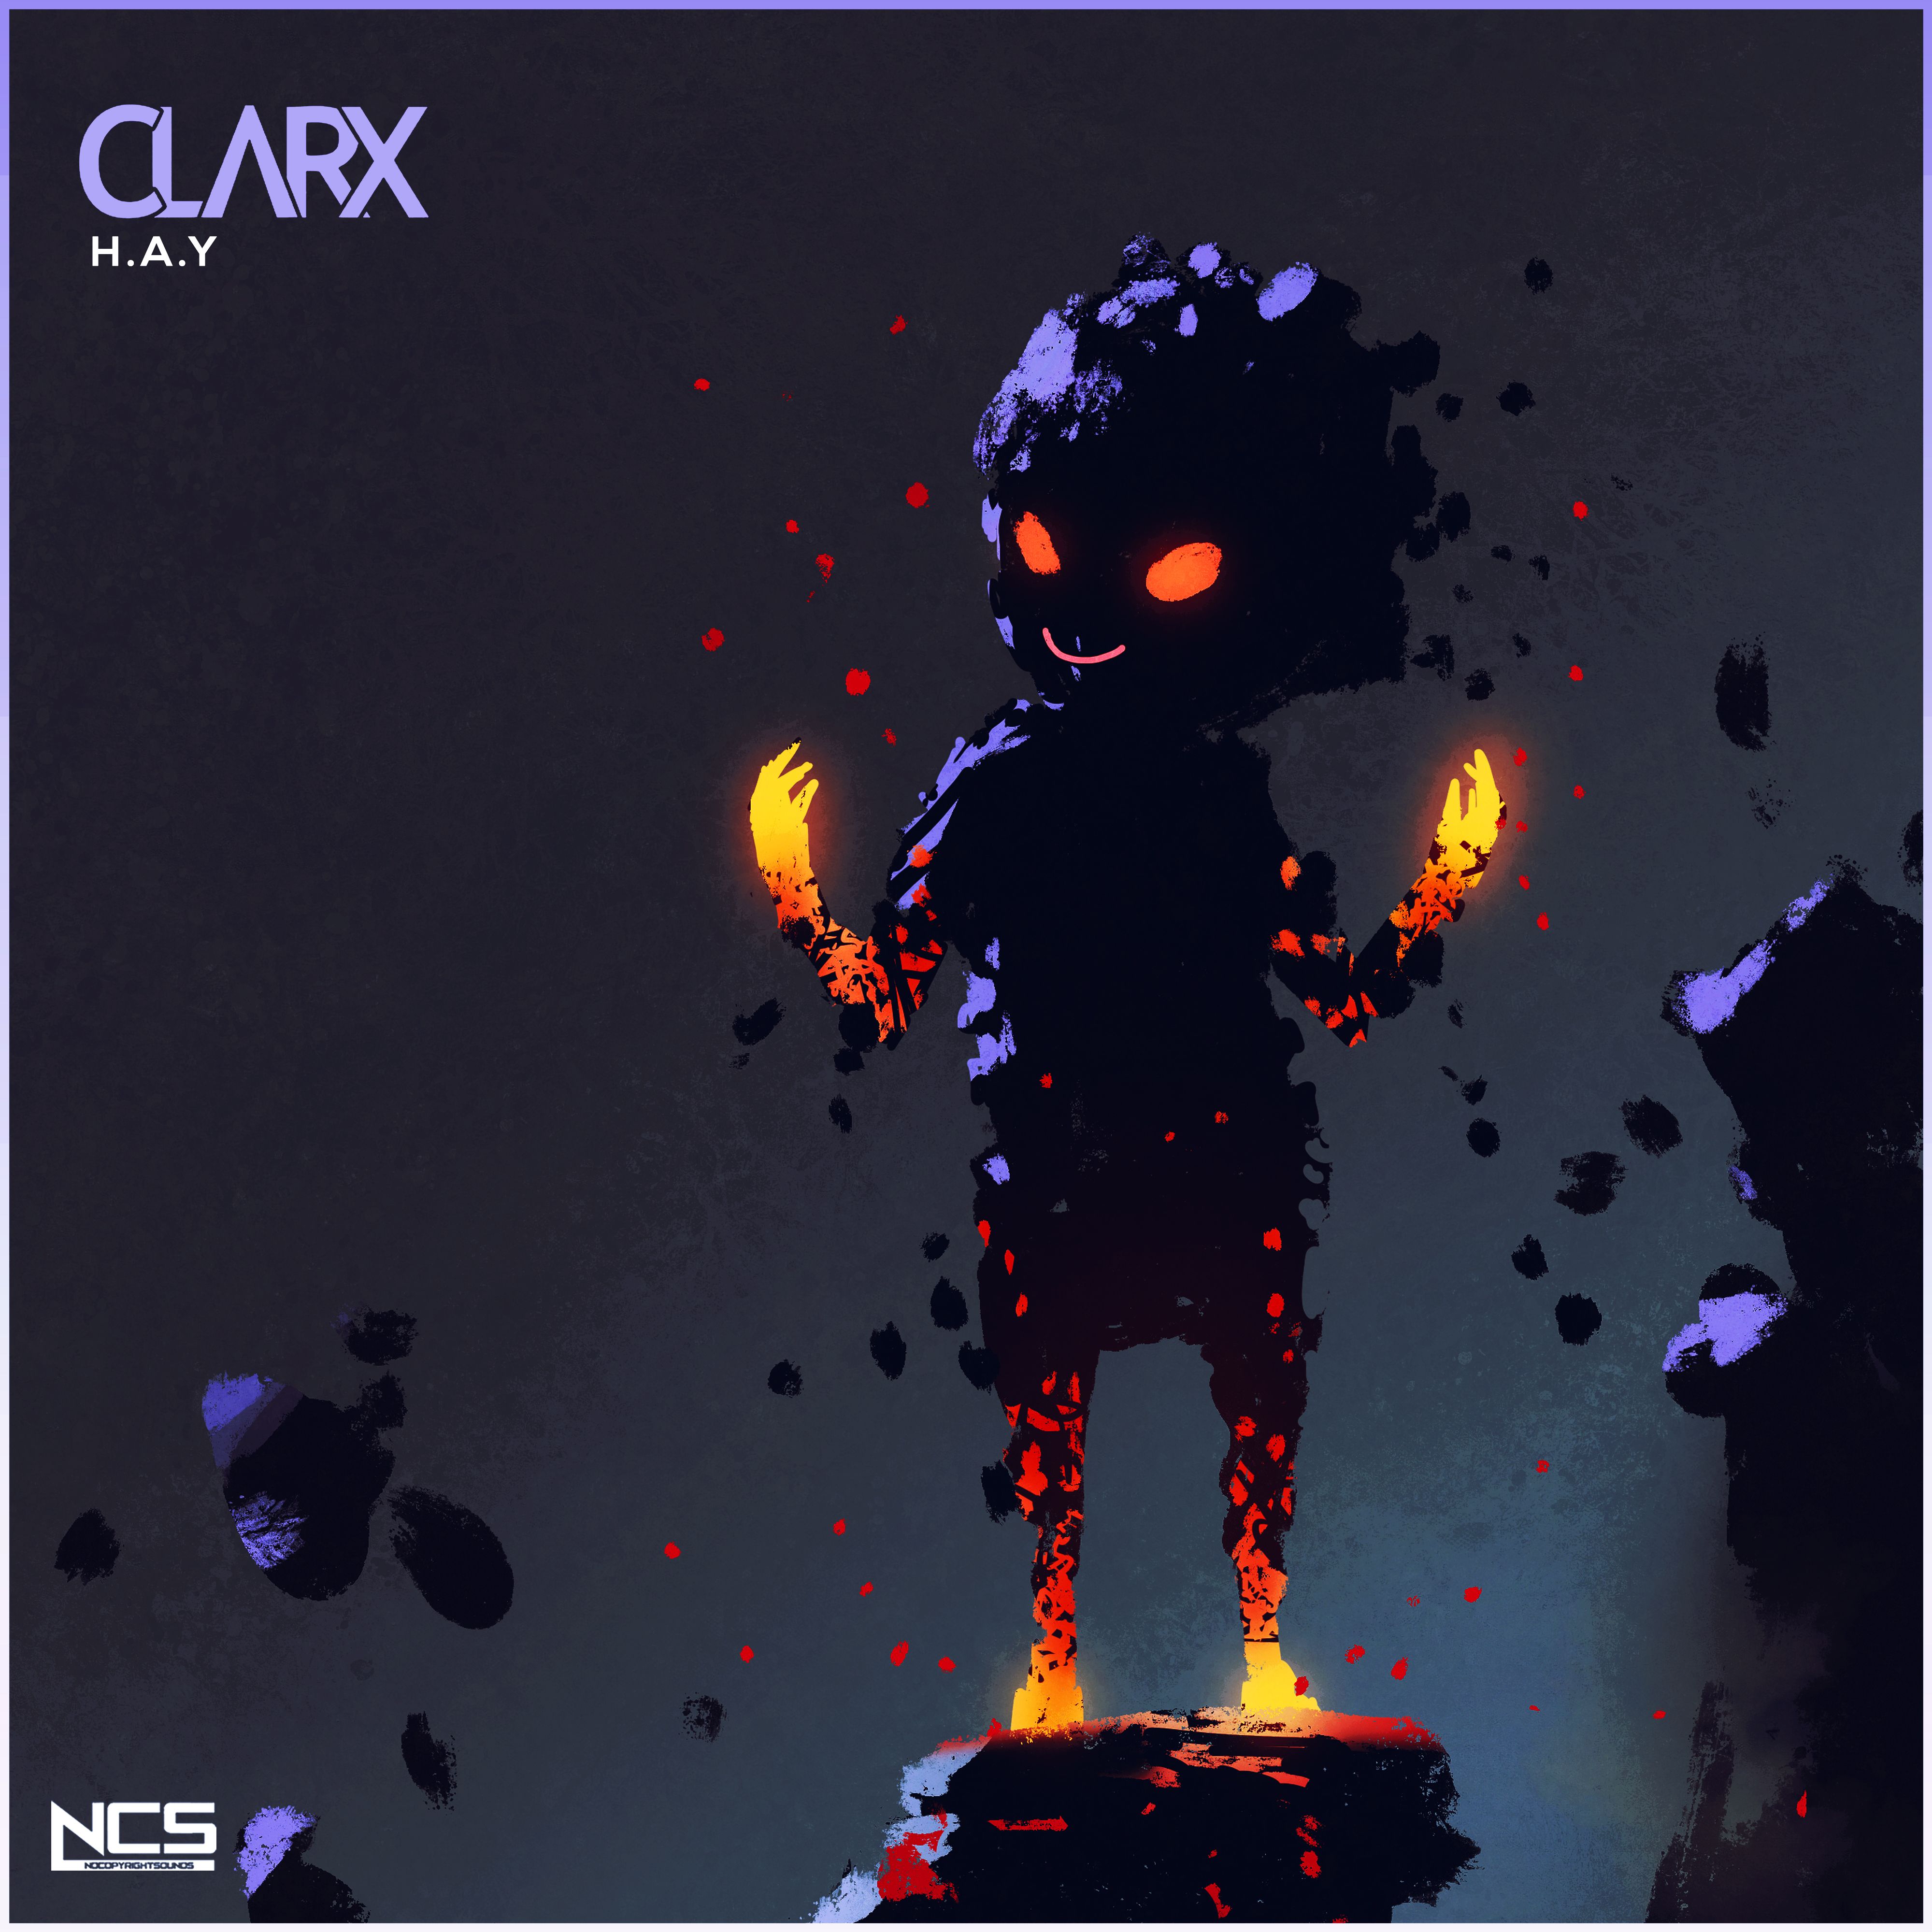 Pobierać Clarx - H.A.Y [NCS Release]